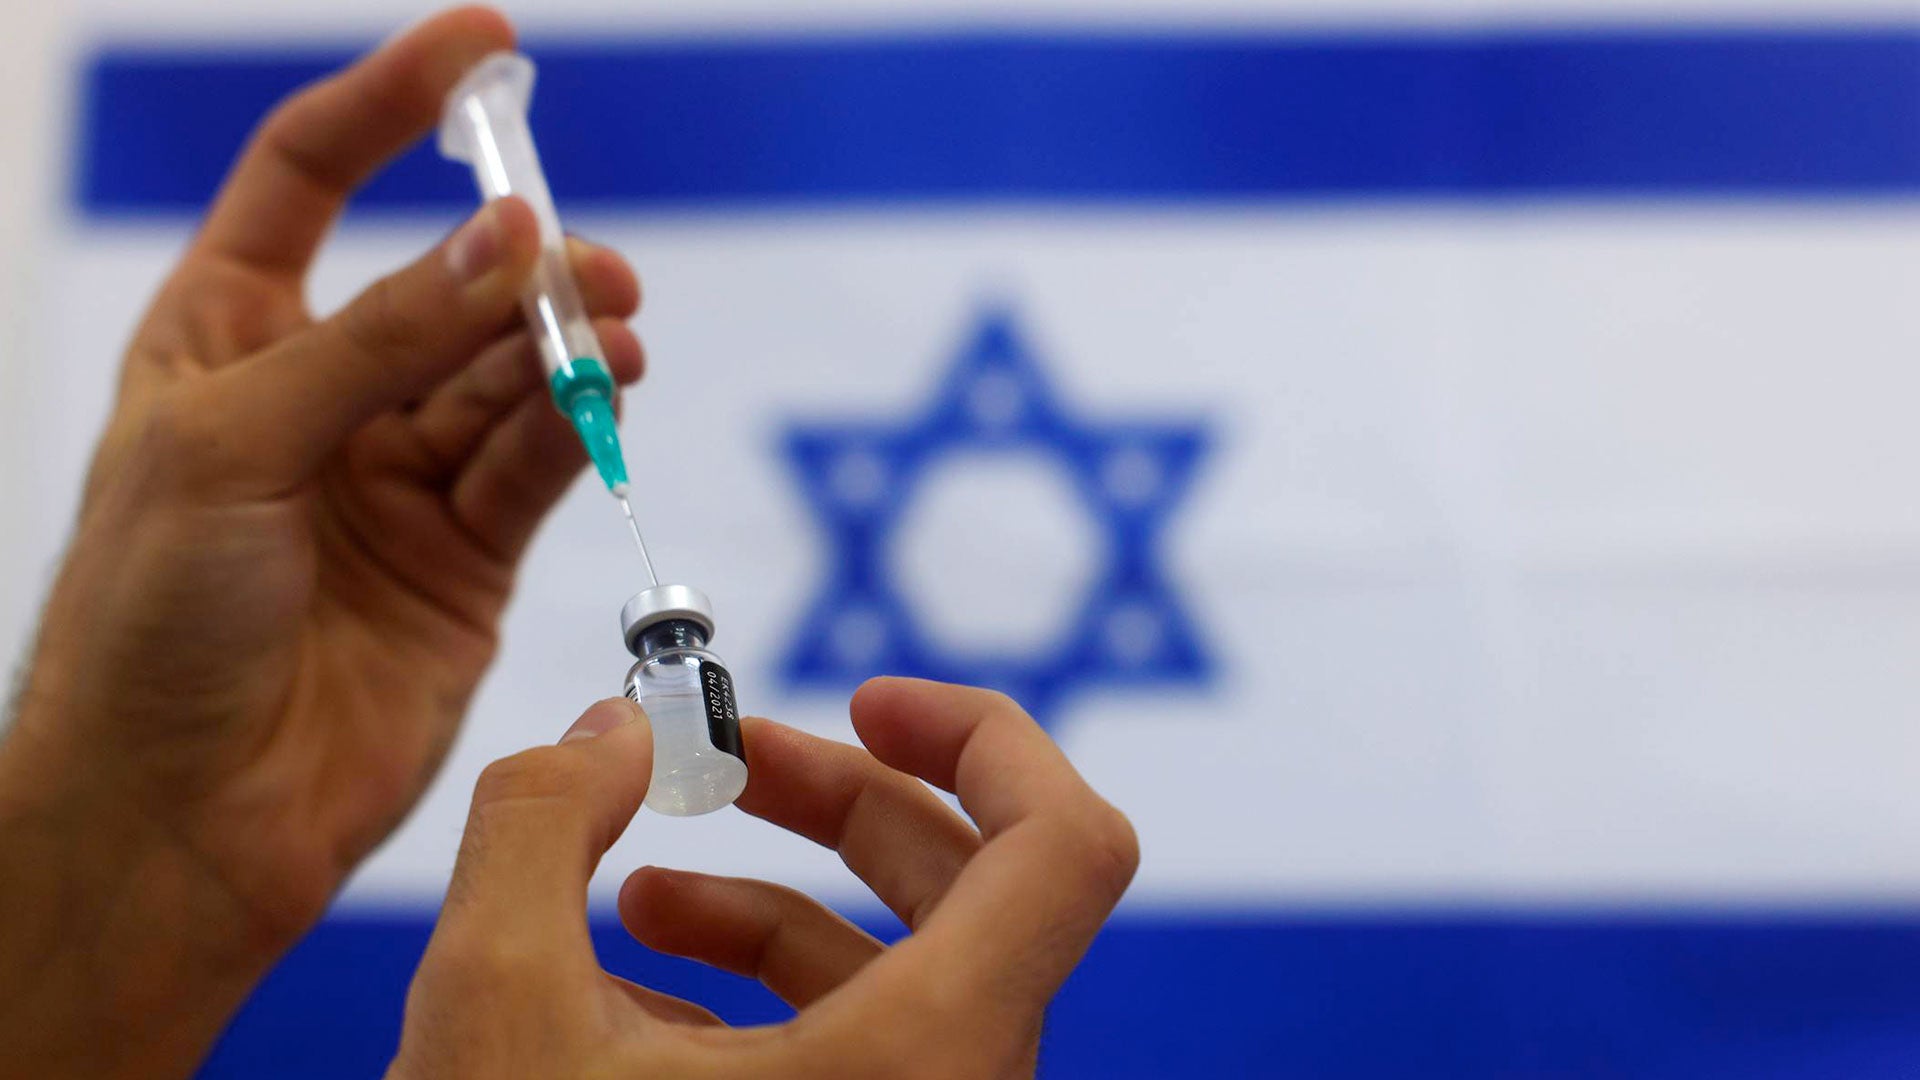 Минздрав Израиля. Порошкообразная вакцина Файзер.